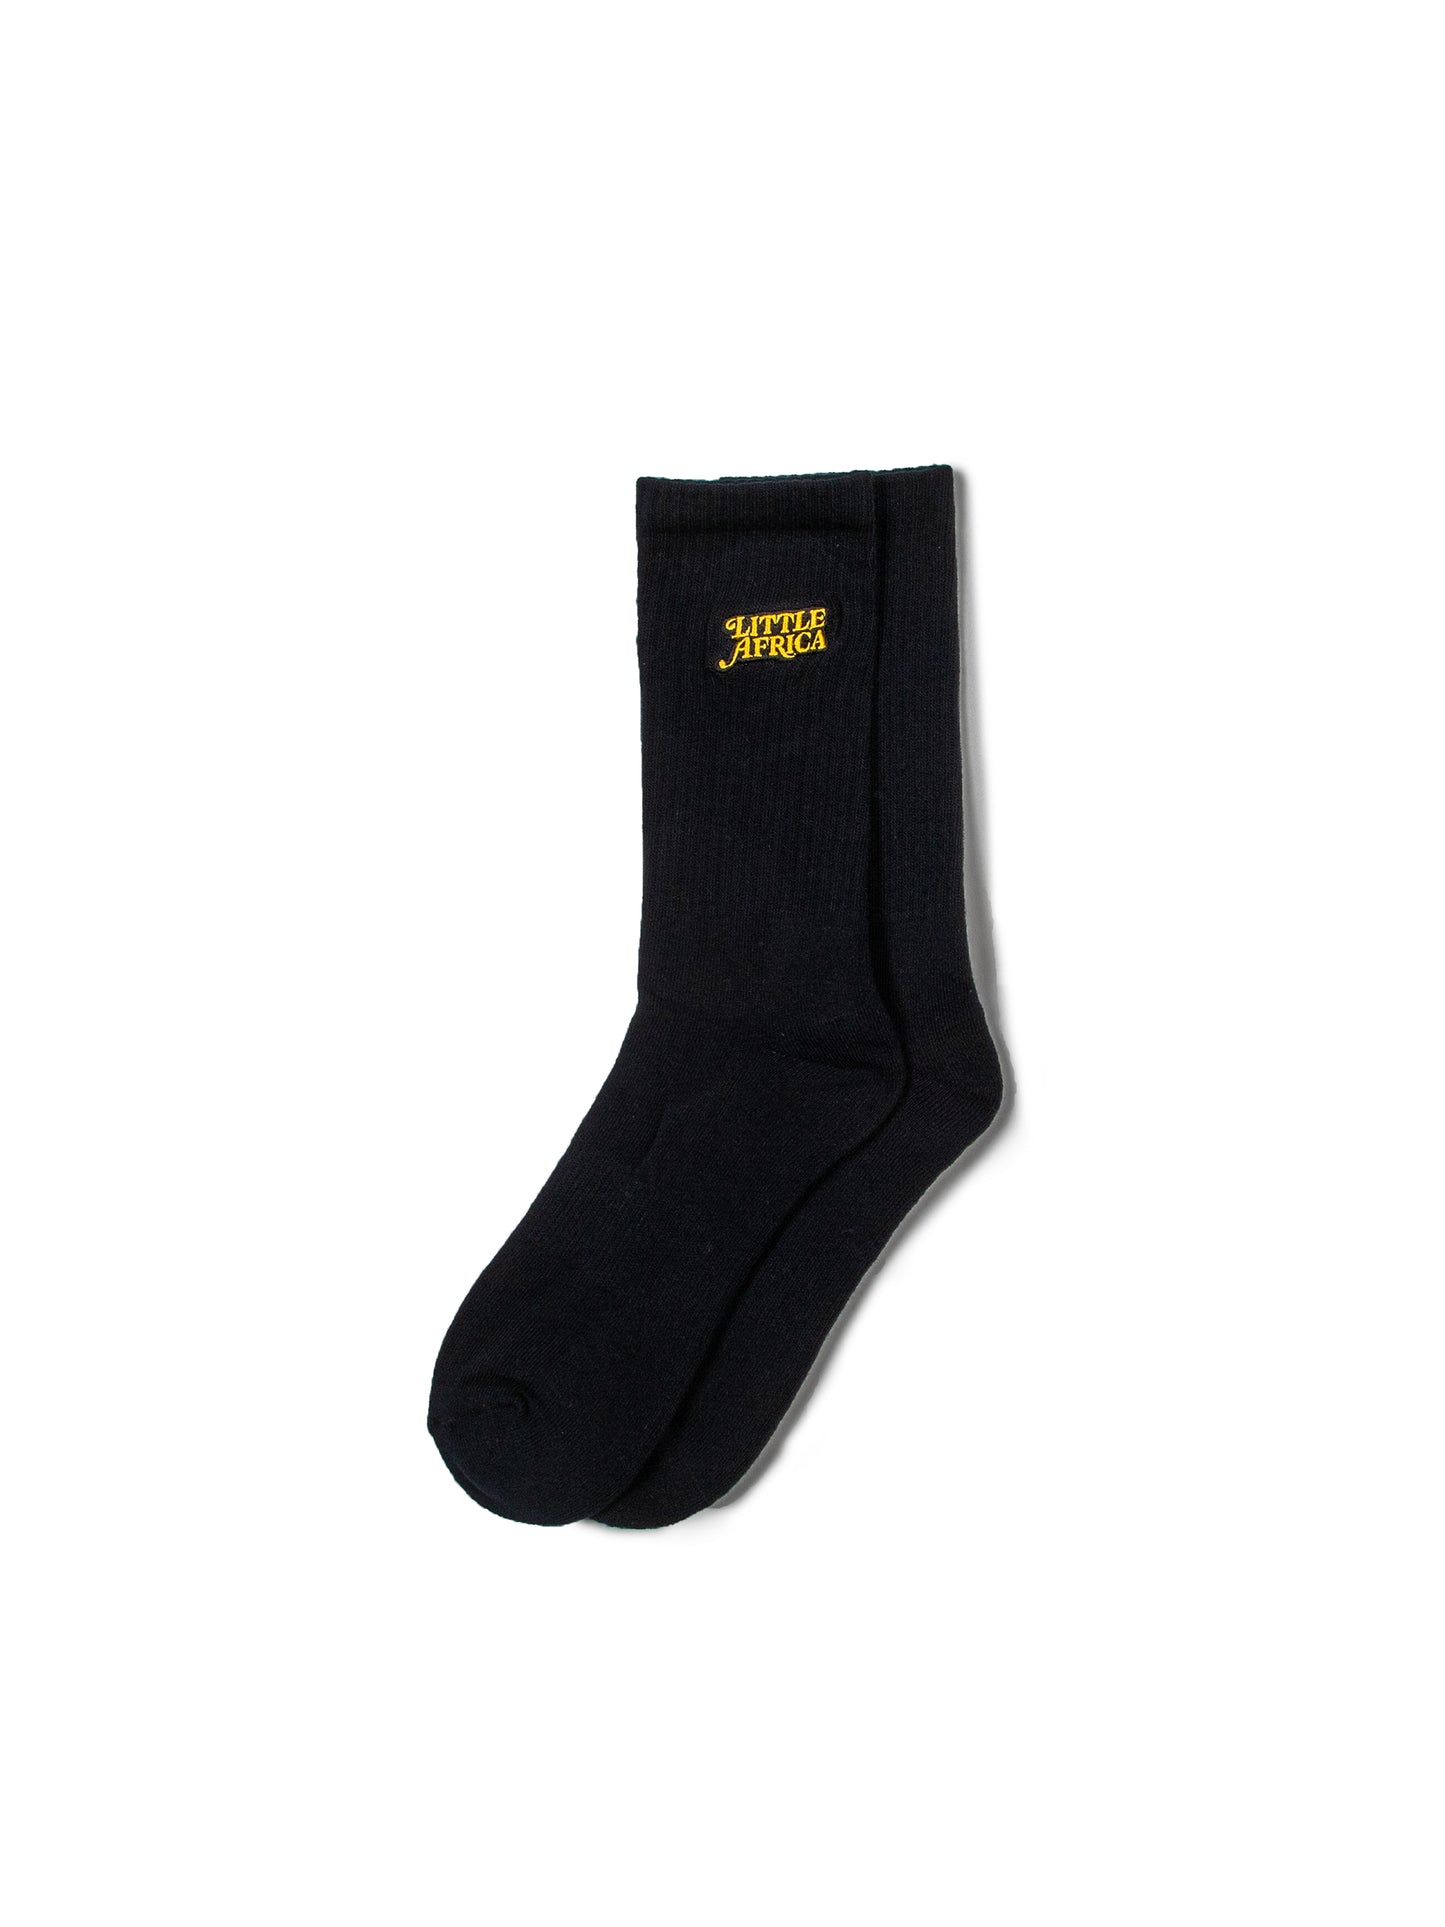 LITTLE AFRICA "Trademark Logo Socks" (Black)